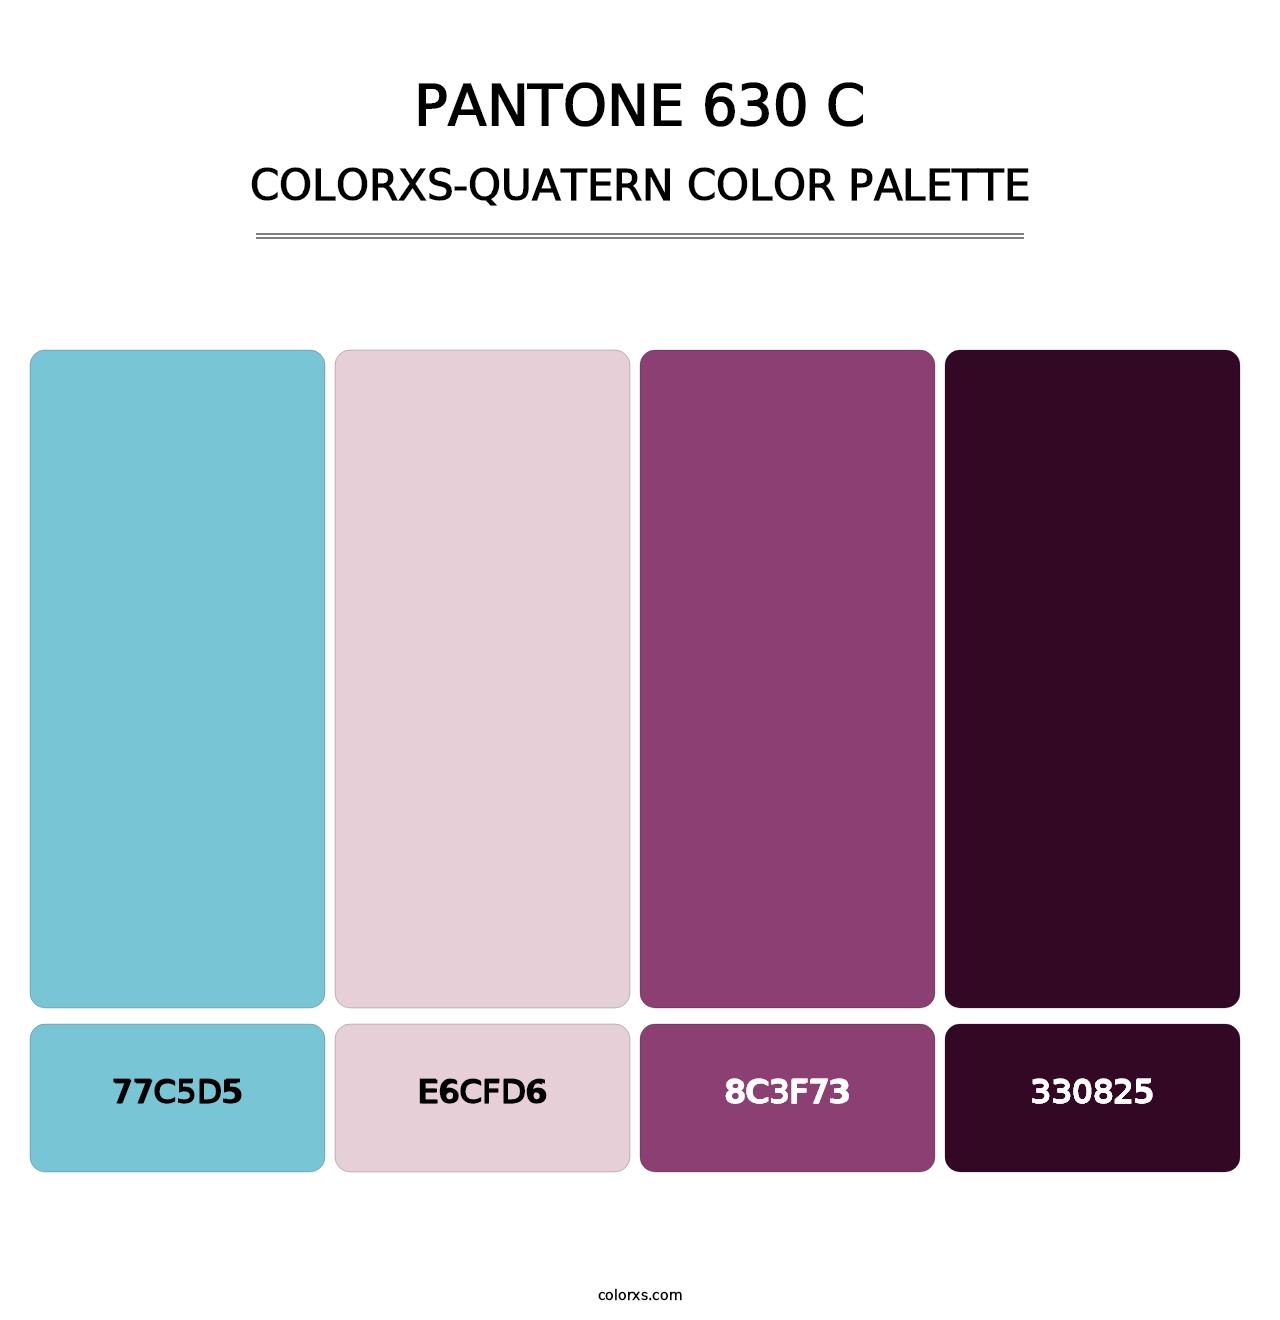 PANTONE 630 C - Colorxs Quatern Palette